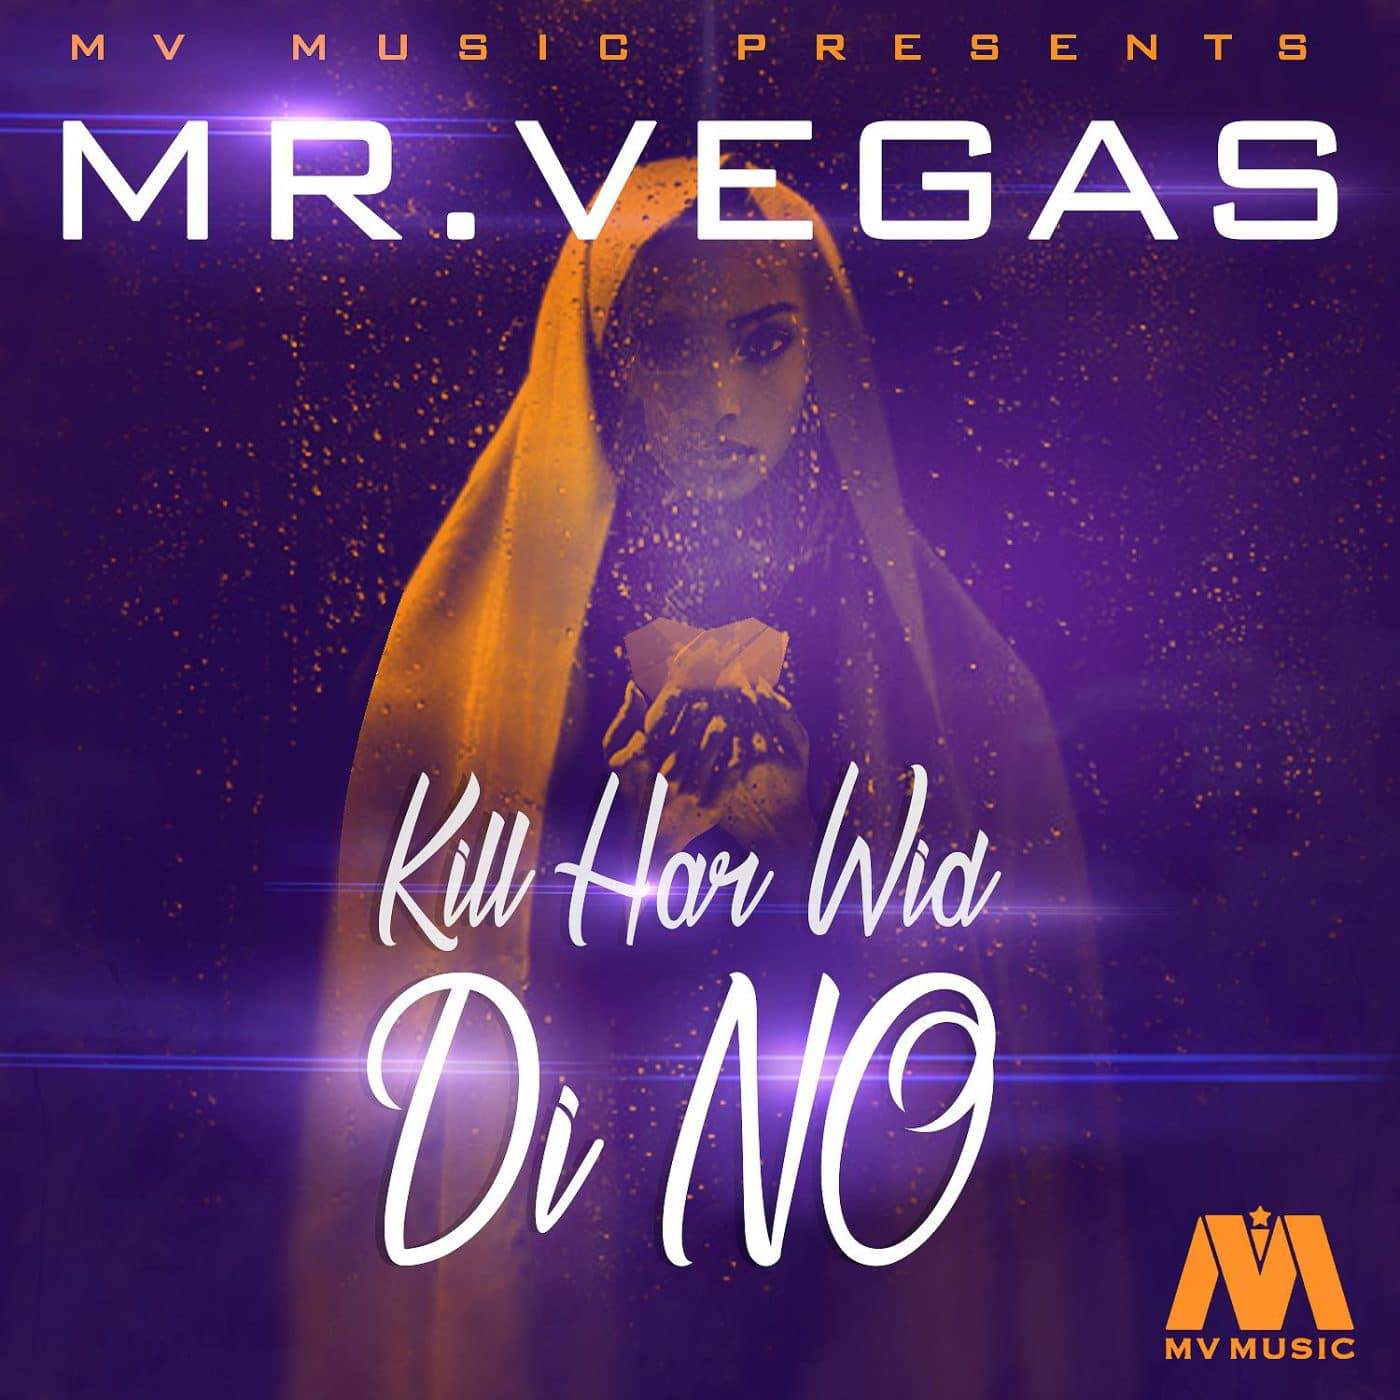 Mr Vegas - Kill Har Wid Di No - MV Music - 2017